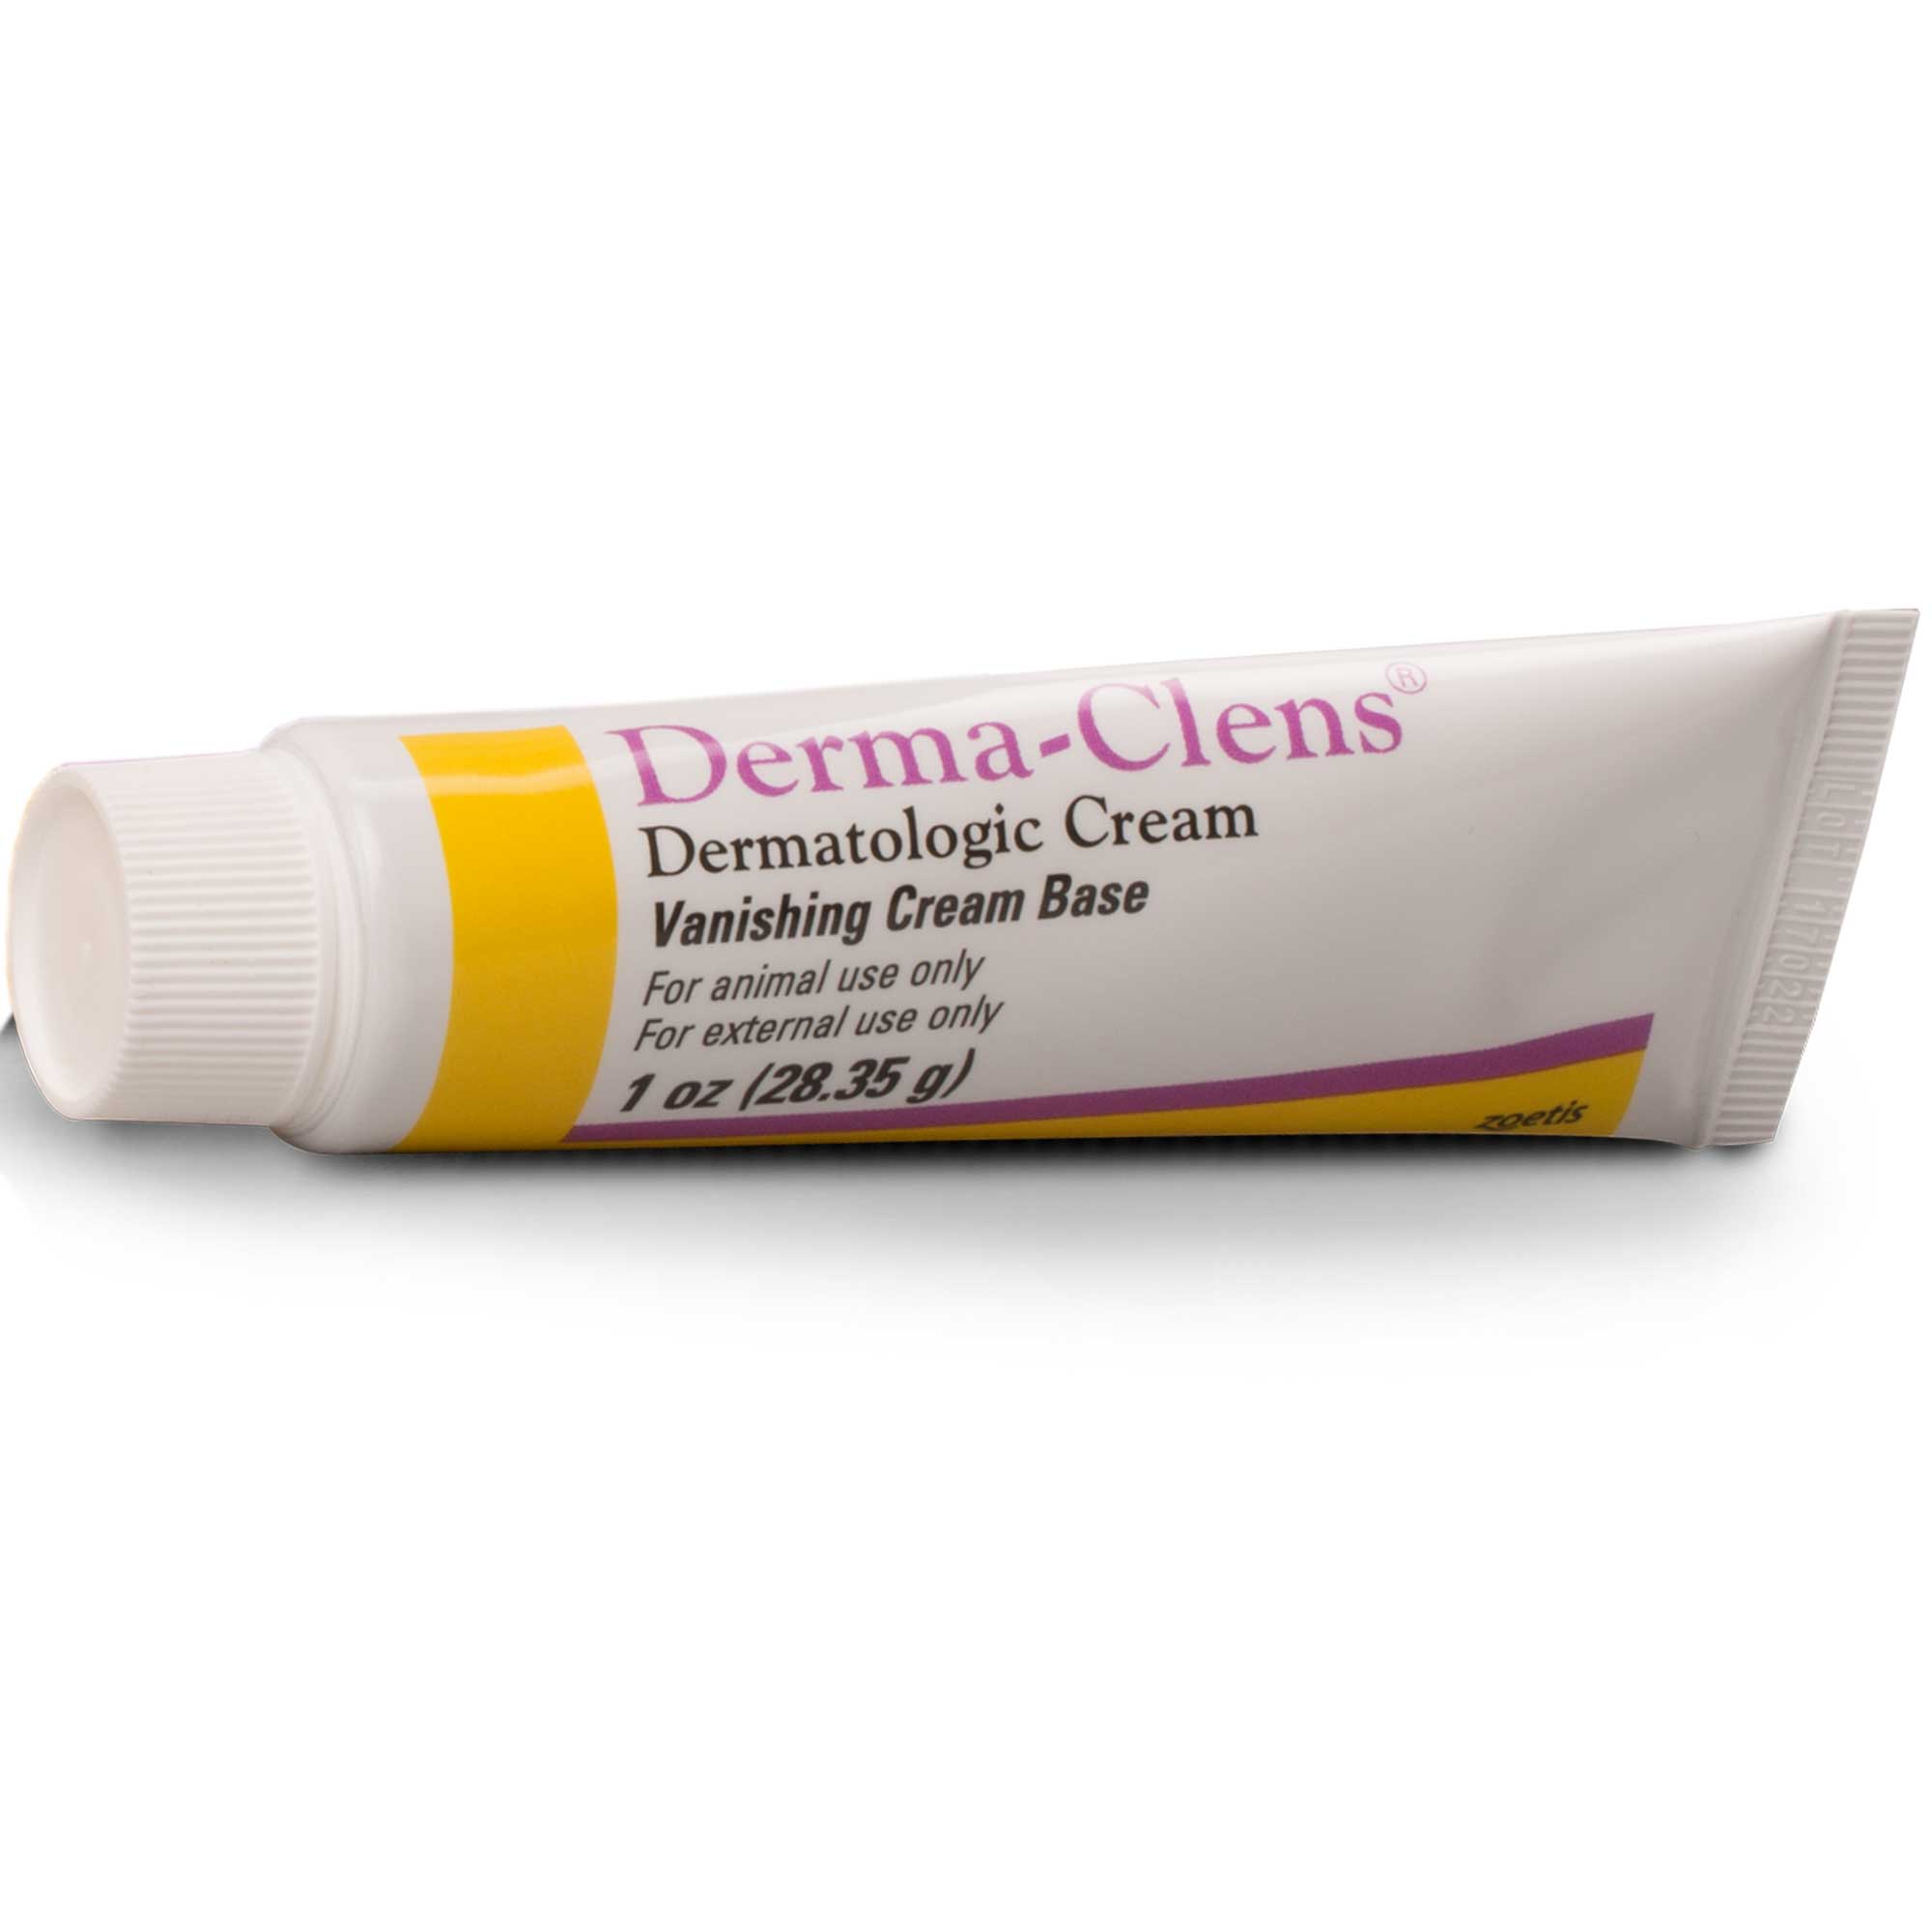 Derma-Clens Dermatologic Cream Usage